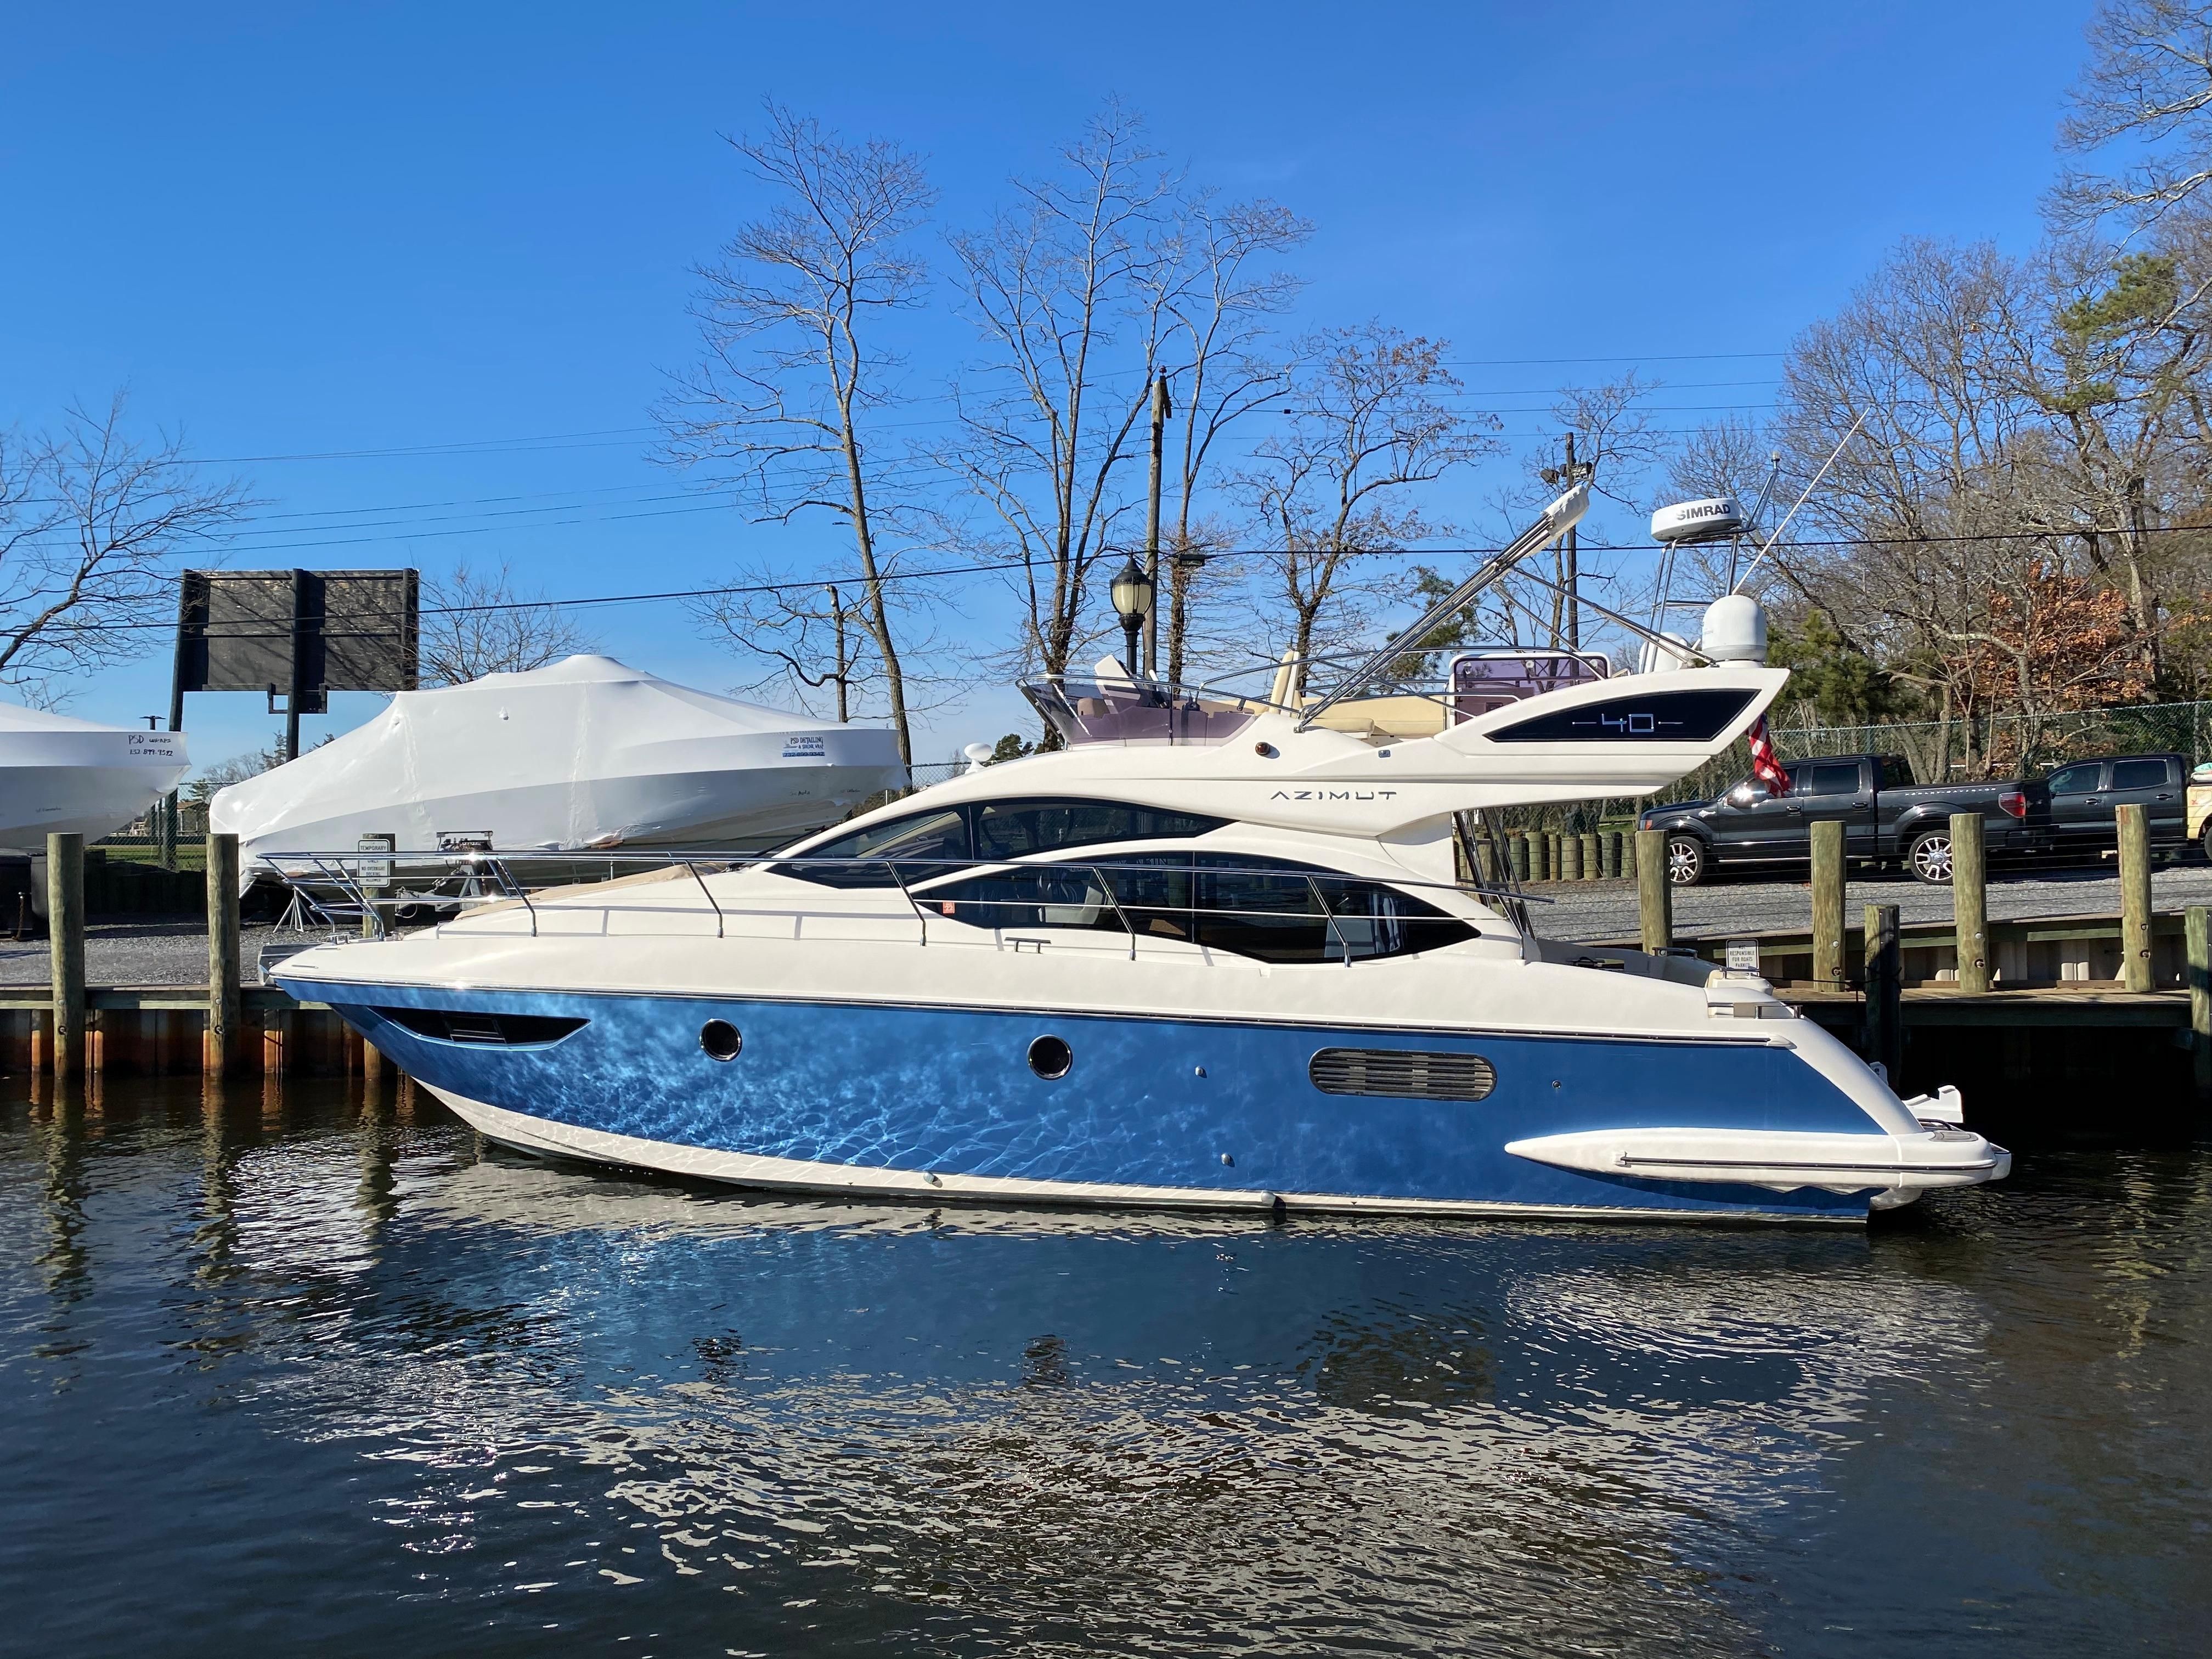 azimut 40 yacht for sale